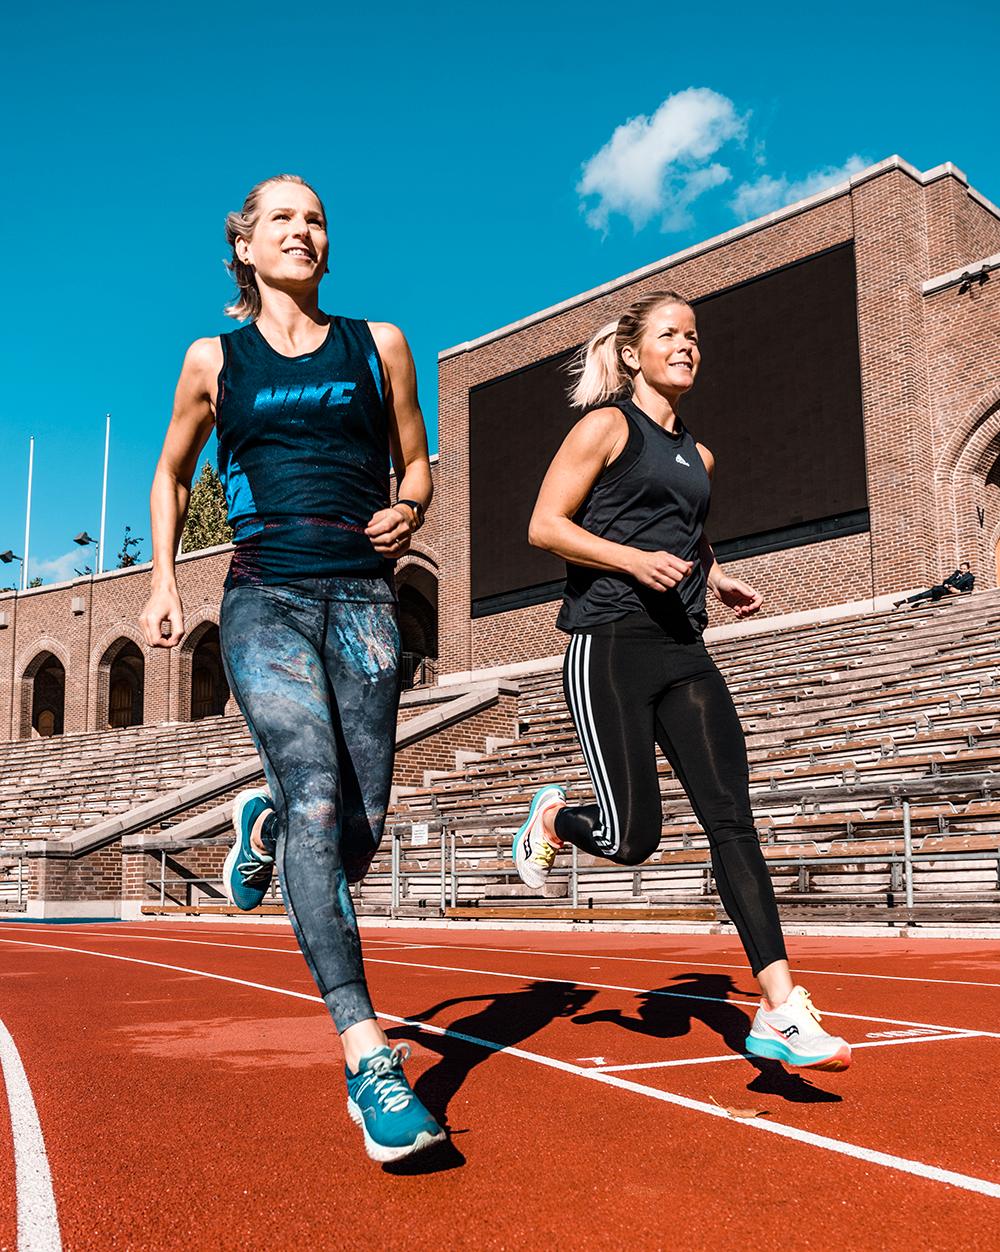 Sara Wiss och Josefine Swärm är båda löpcoacher och peppar dig genom träningspassen i podden ”Spring så snackar vi”.